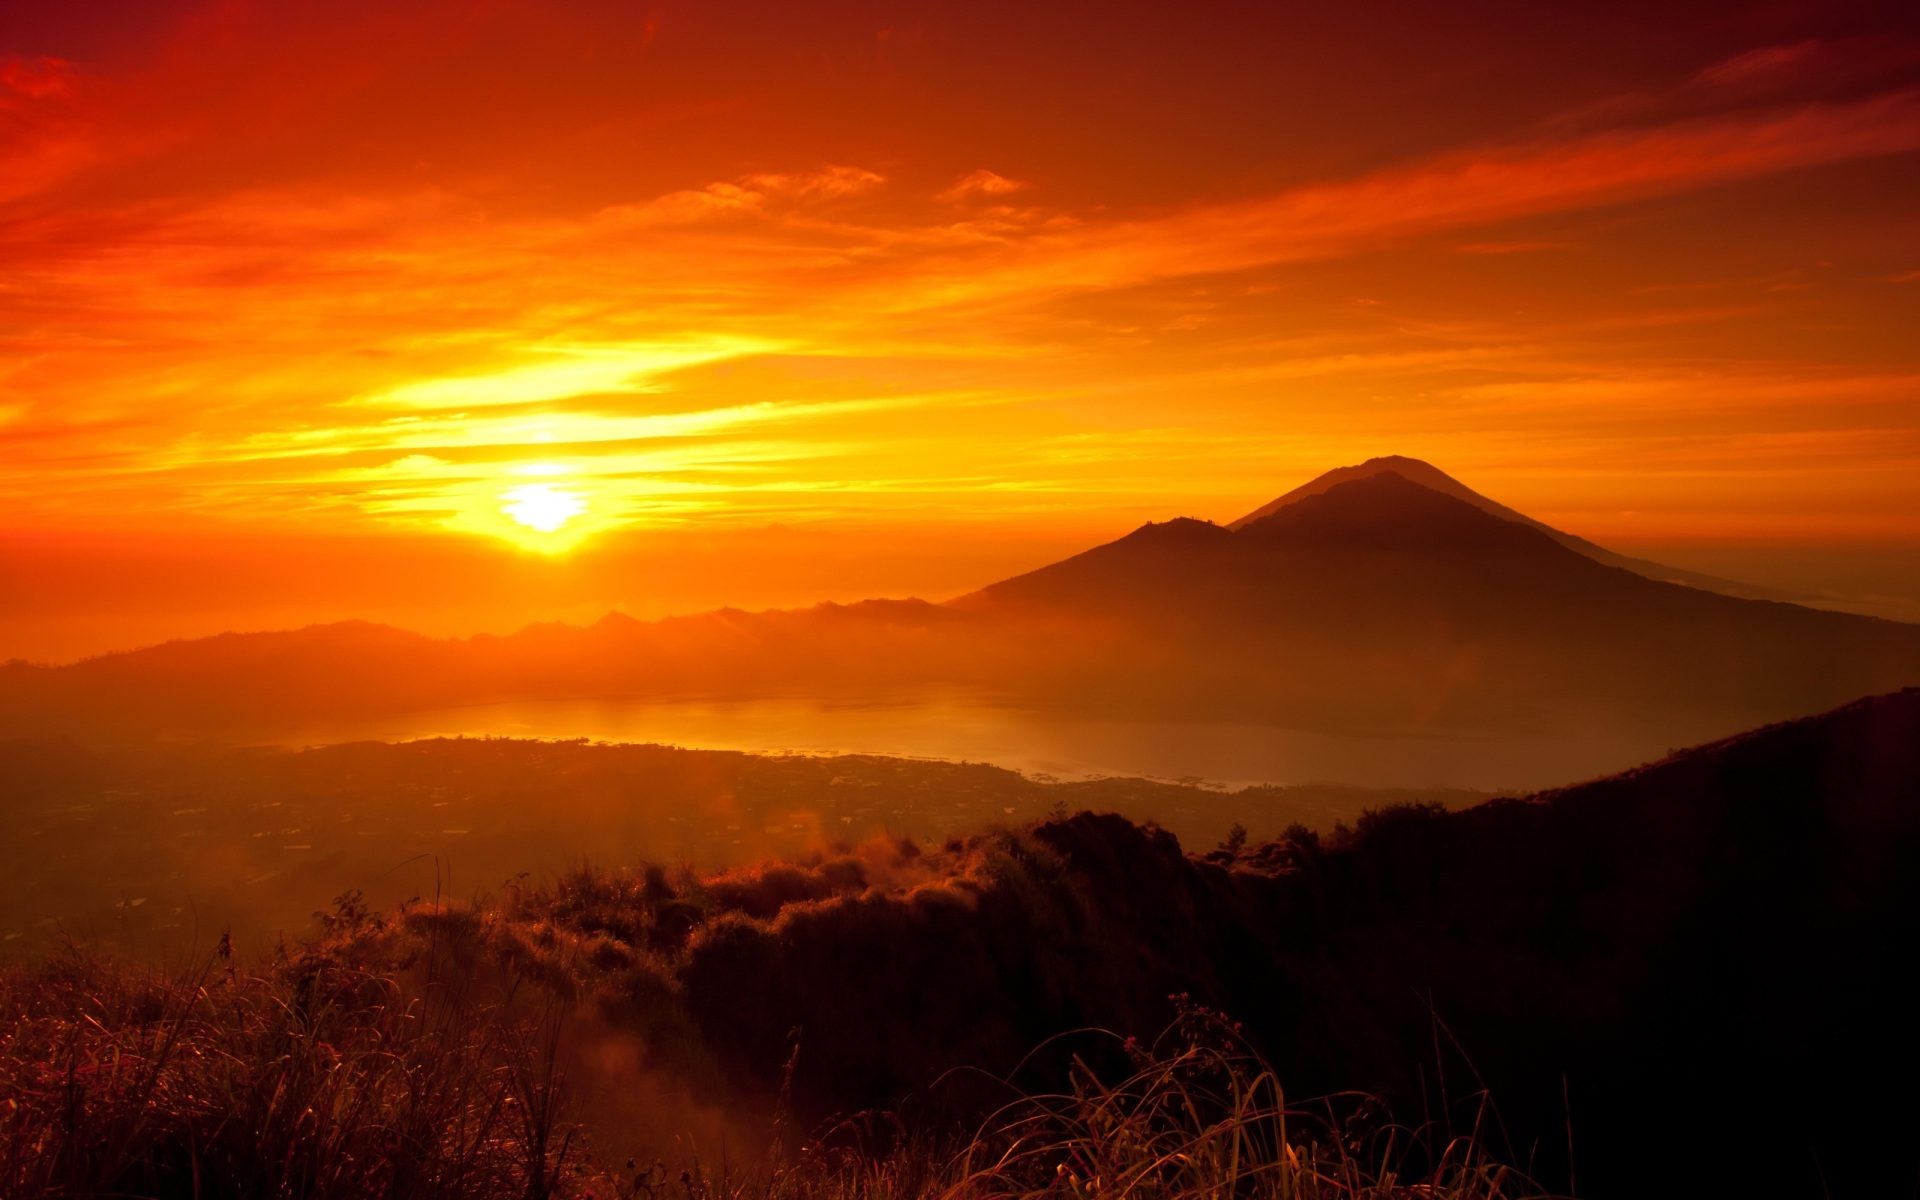 http://eskipaper.com/images/sunrise-mountain-1.jpg